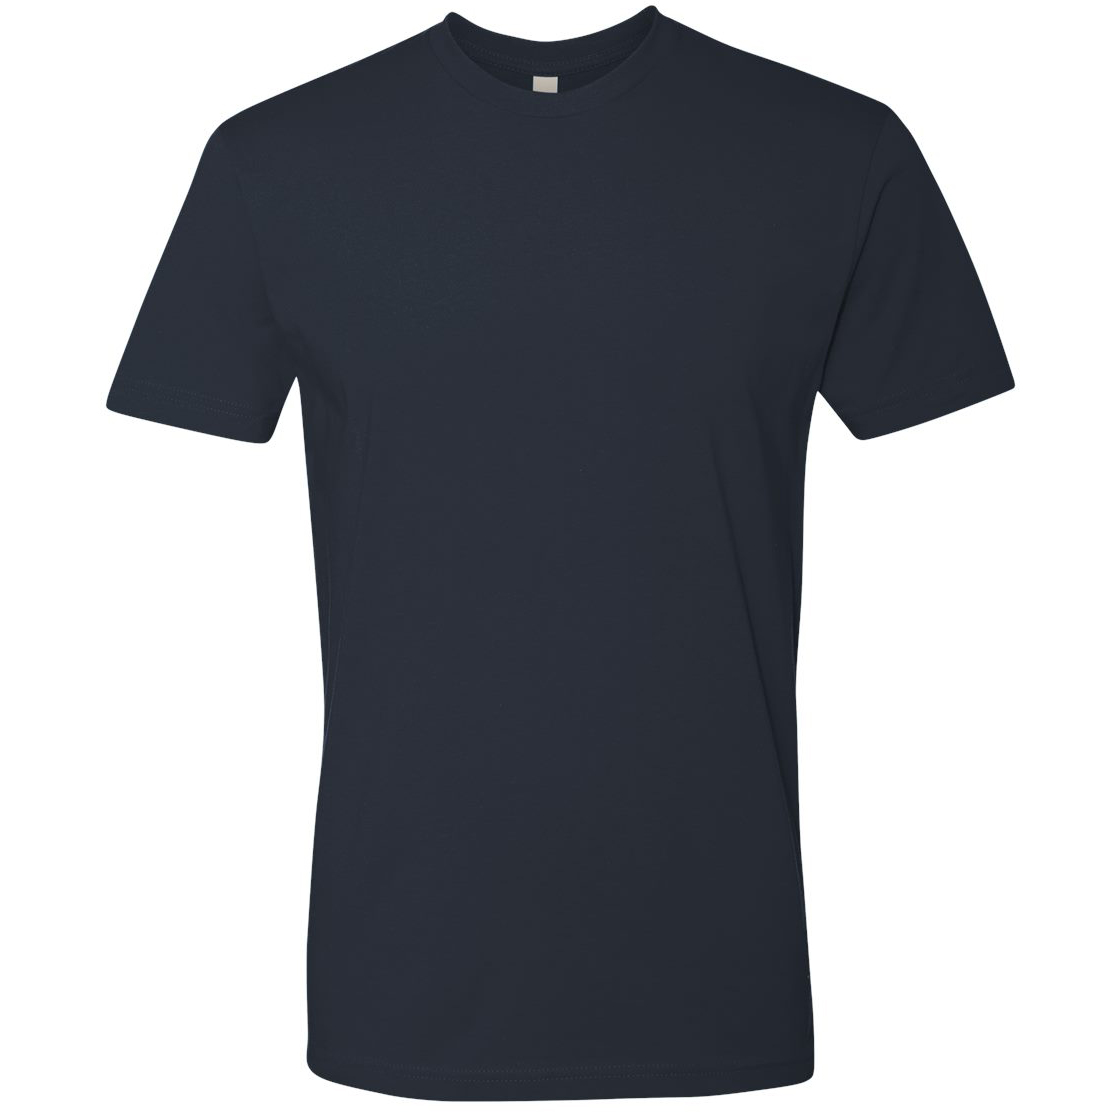 LV leaf denim baseball shirt, Men's Fashion, Tops & Sets, Tshirts & Polo  Shirts on Carousell